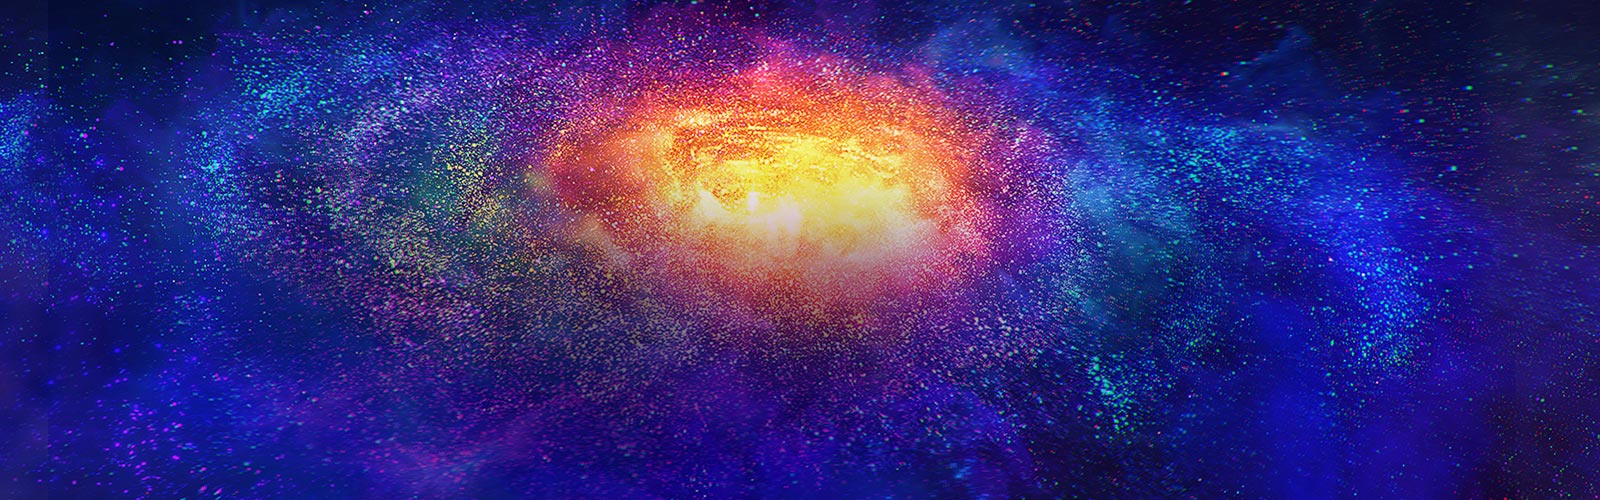 Миллионы крошечных разноцветных частиц в космосе